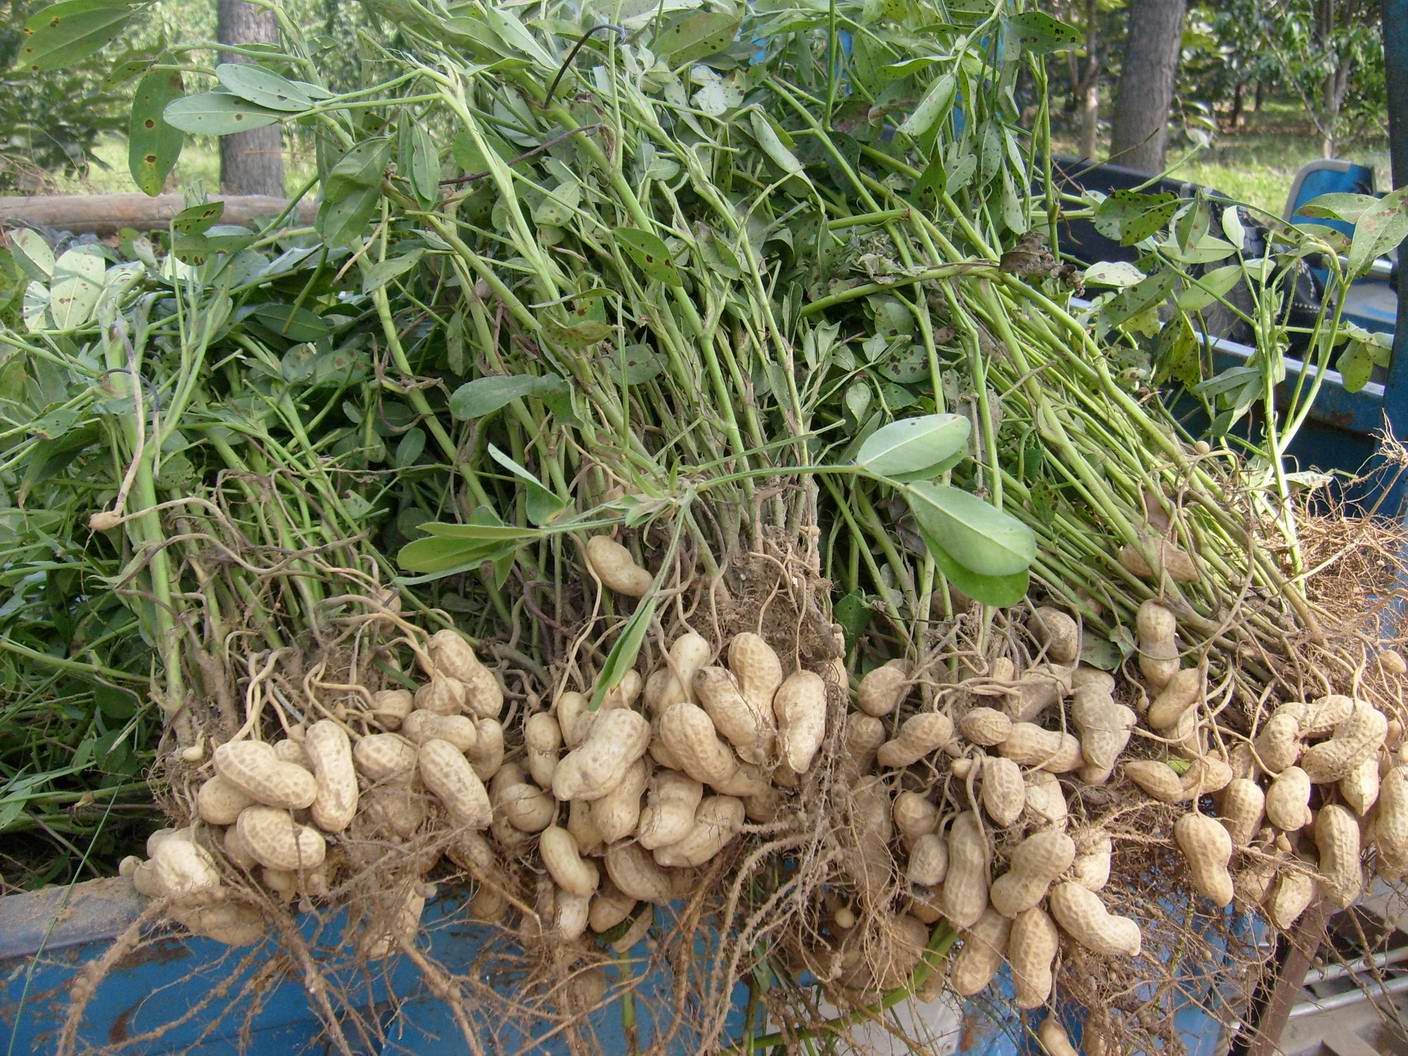 Рекомендации огородникам, как вырастить хороший урожай арахиса